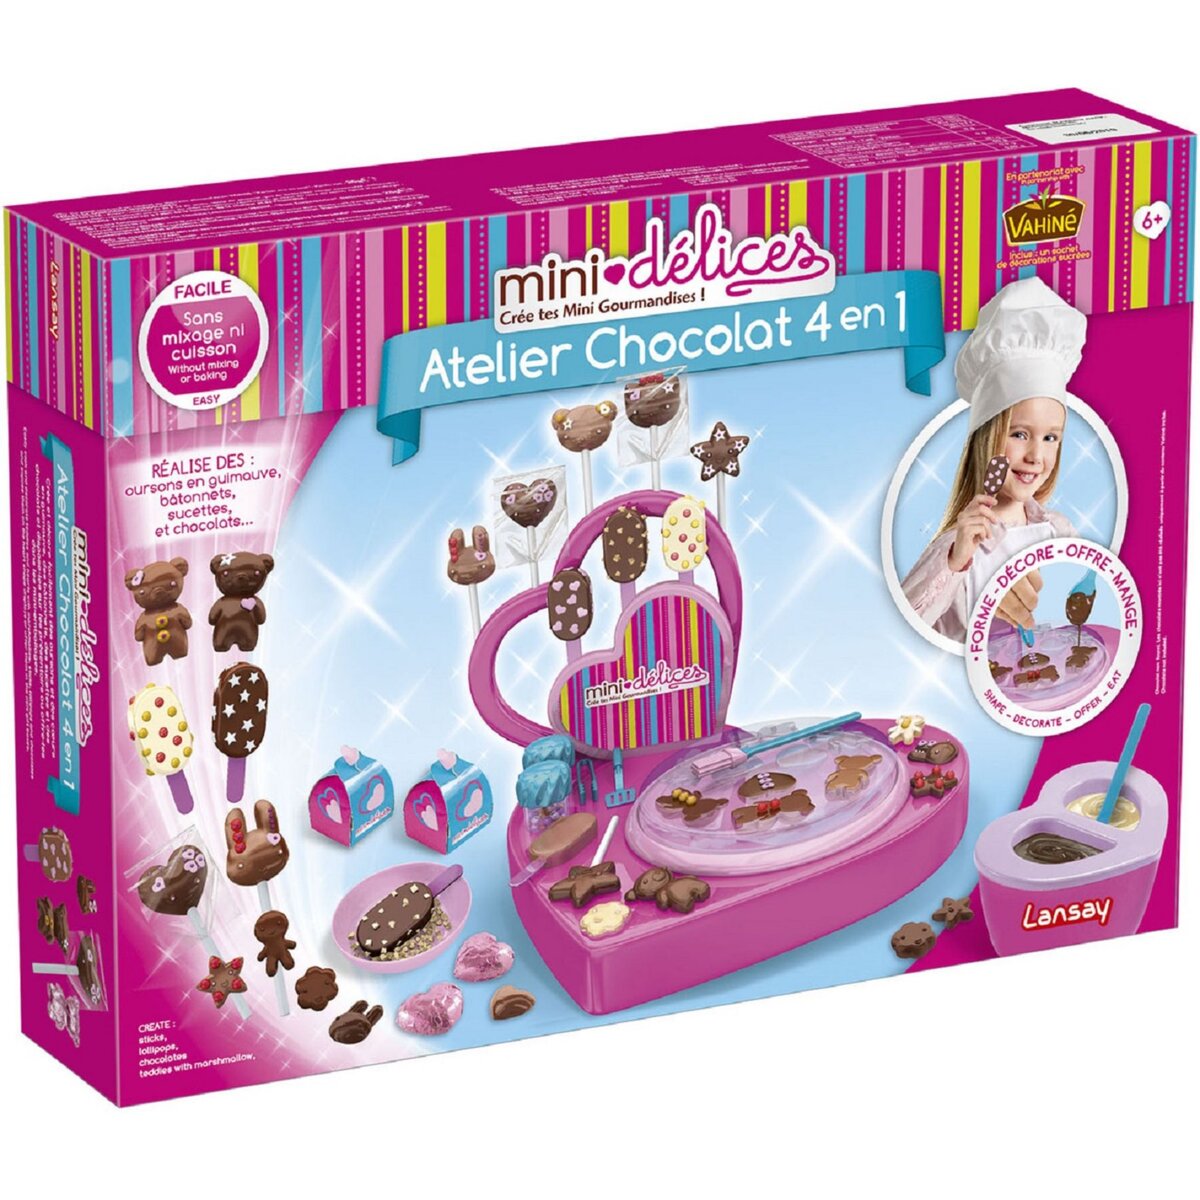 LANSAY Mini délices super atelier chocolat 4 en 1